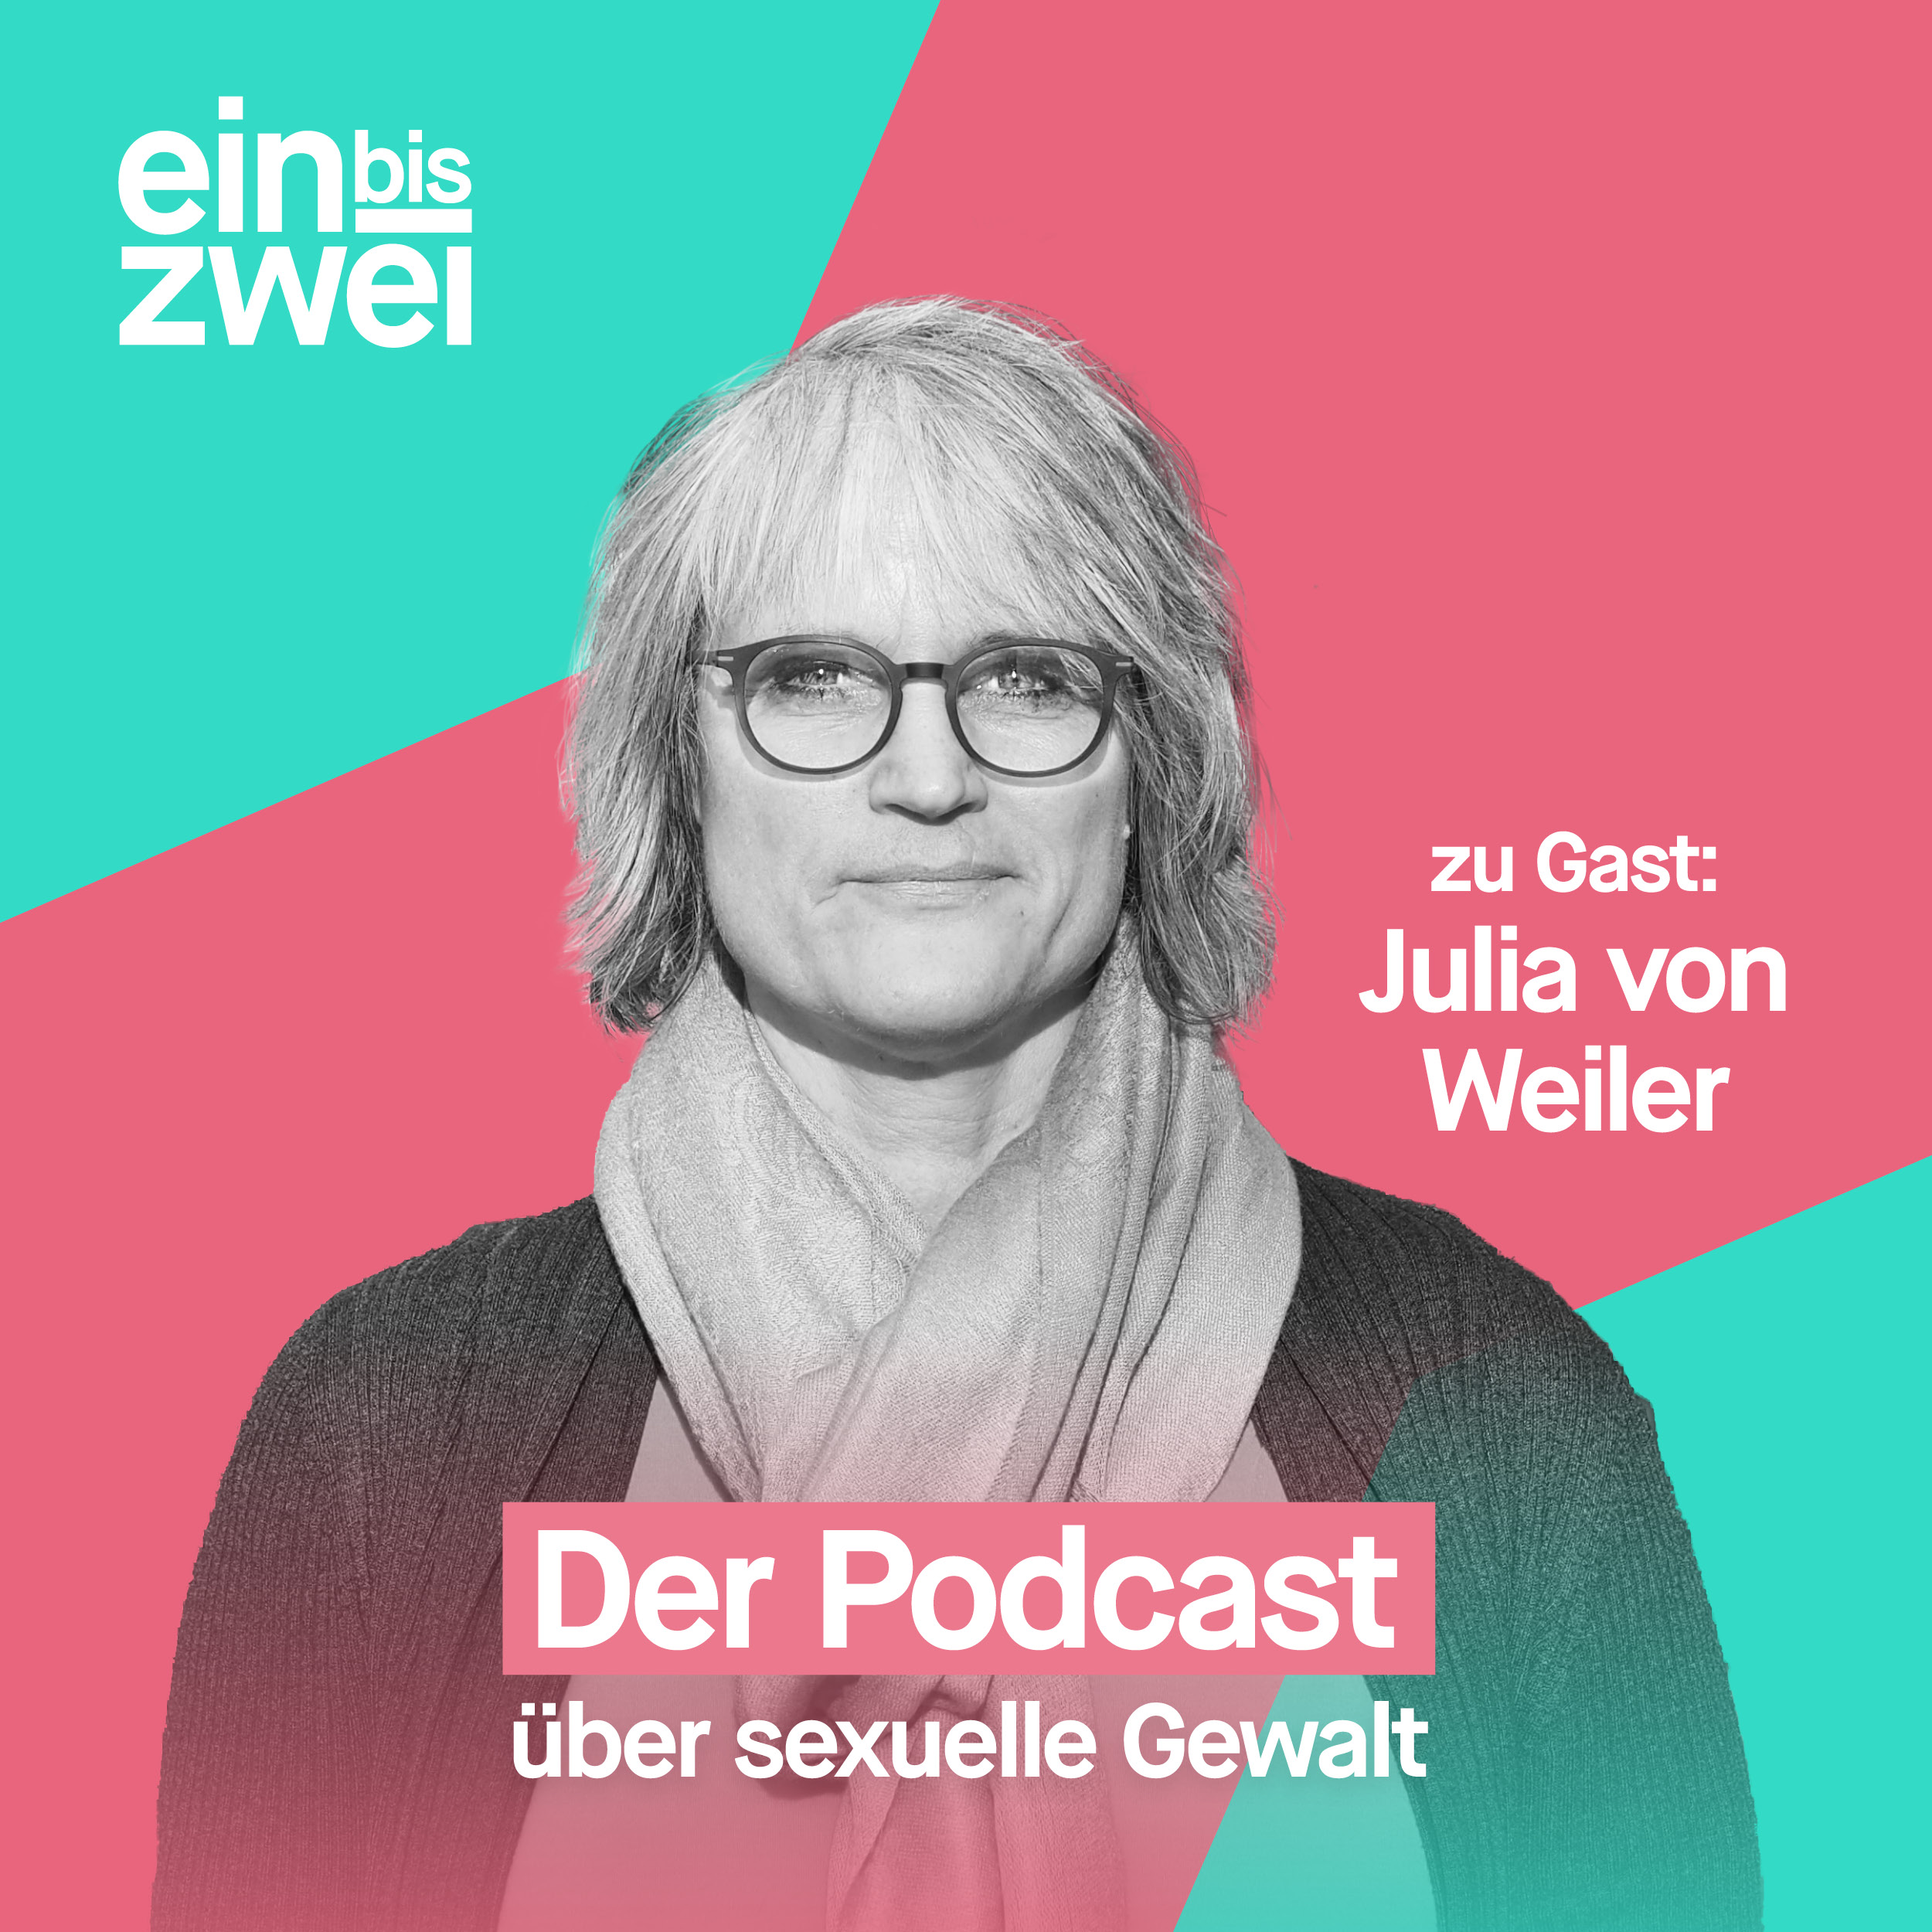 Julia von Weiler